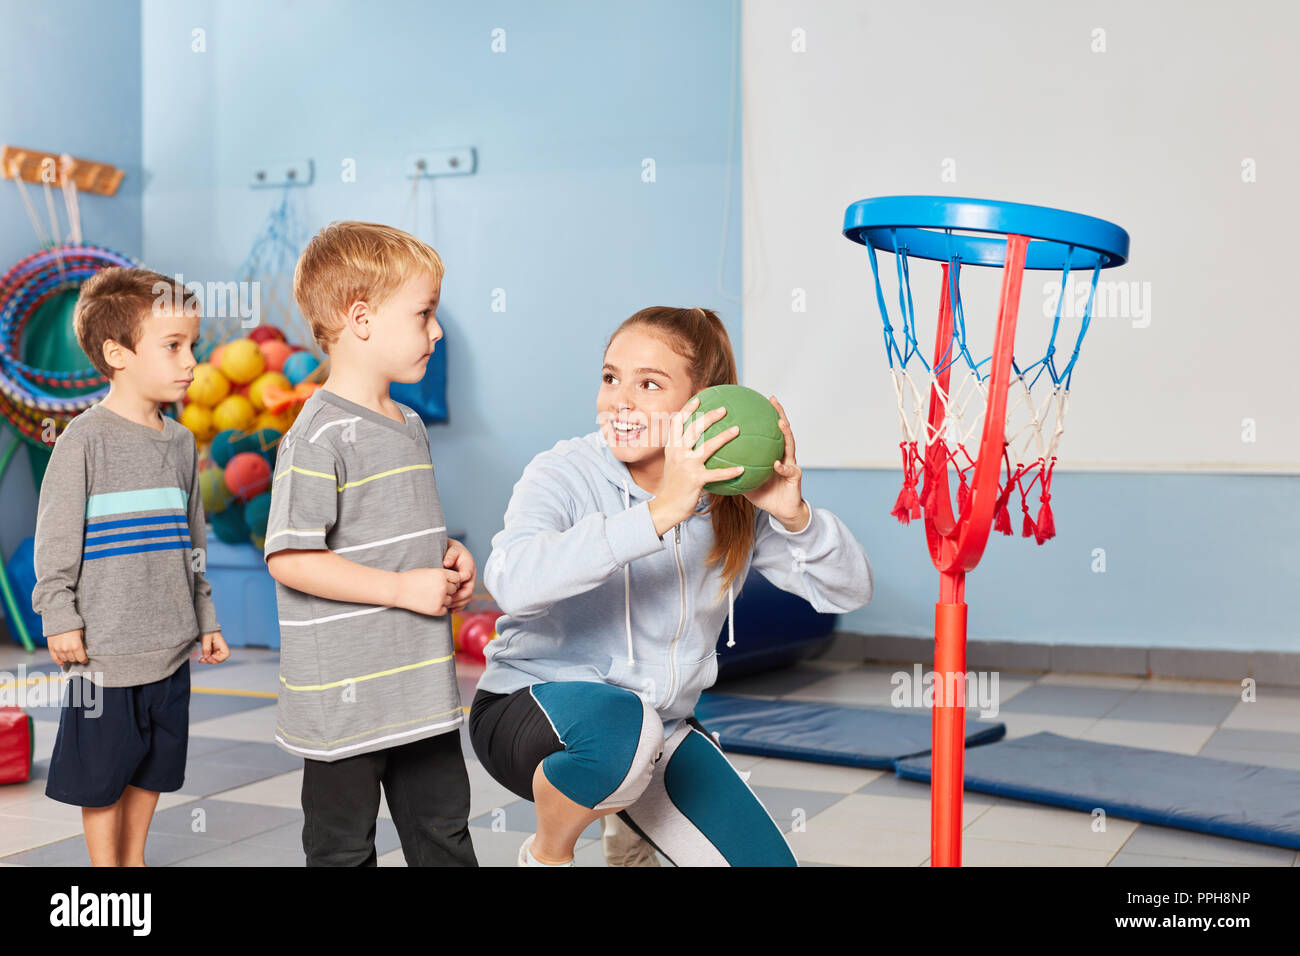 https://c8.alamy.com/compfr/pph8np/professeur-de-sport-et-les-enfants-jouer-au-basket-ball-ensemble-dans-la-salle-de-sport-d-enfants-d-age-prescolaire-pph8np.jpg